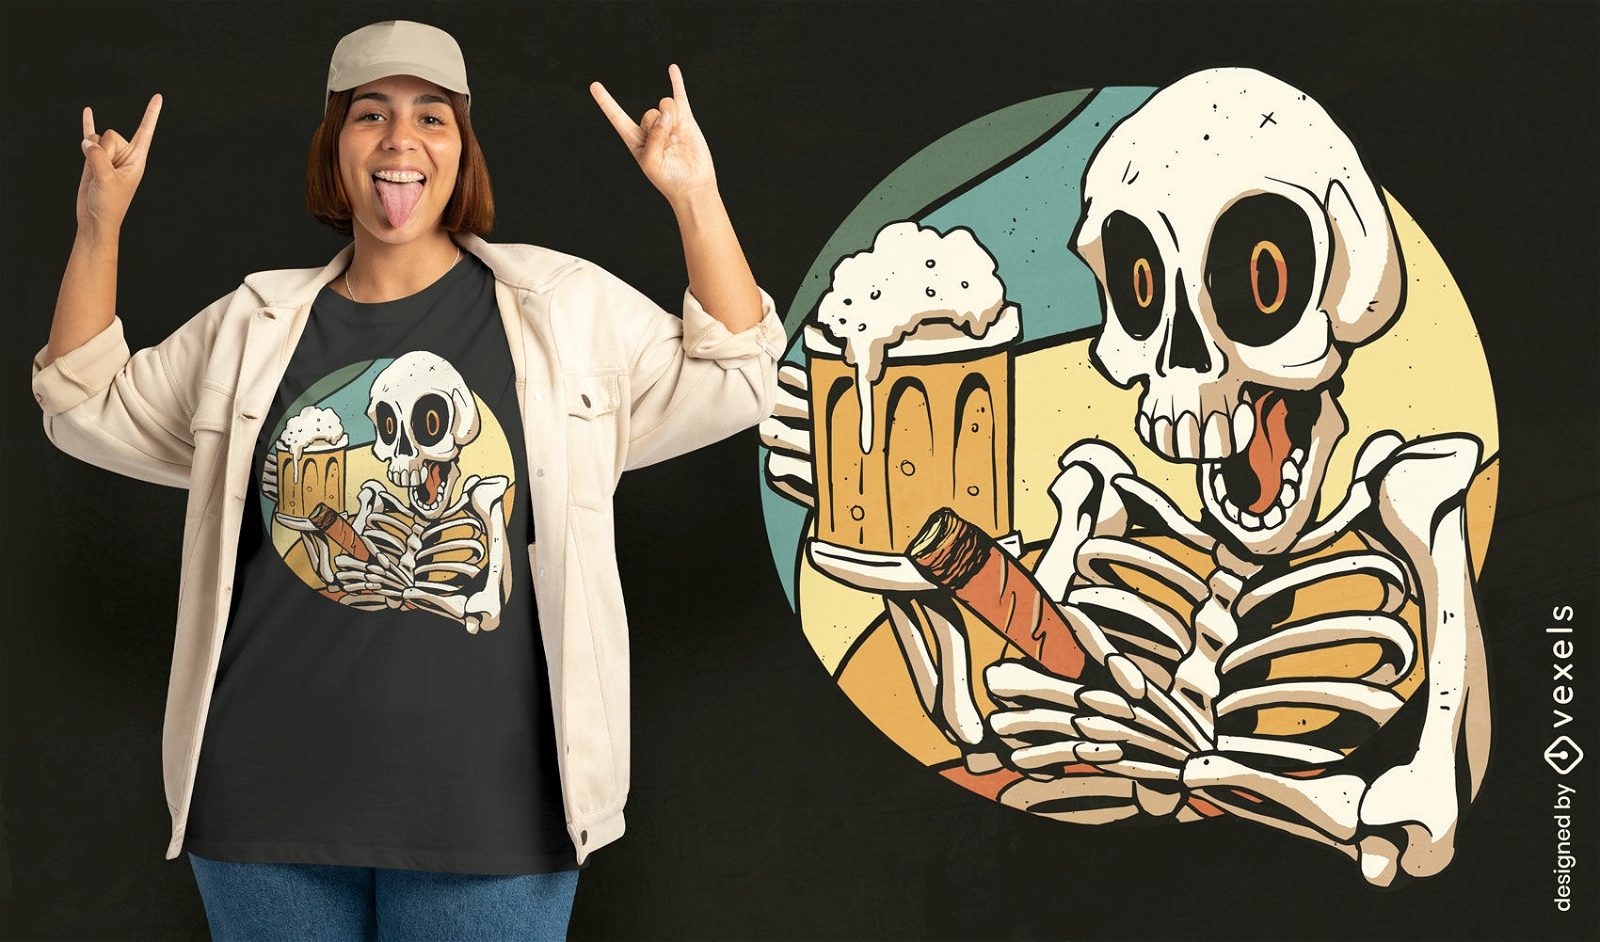 Skeleton drinking and smoking t-shirt design